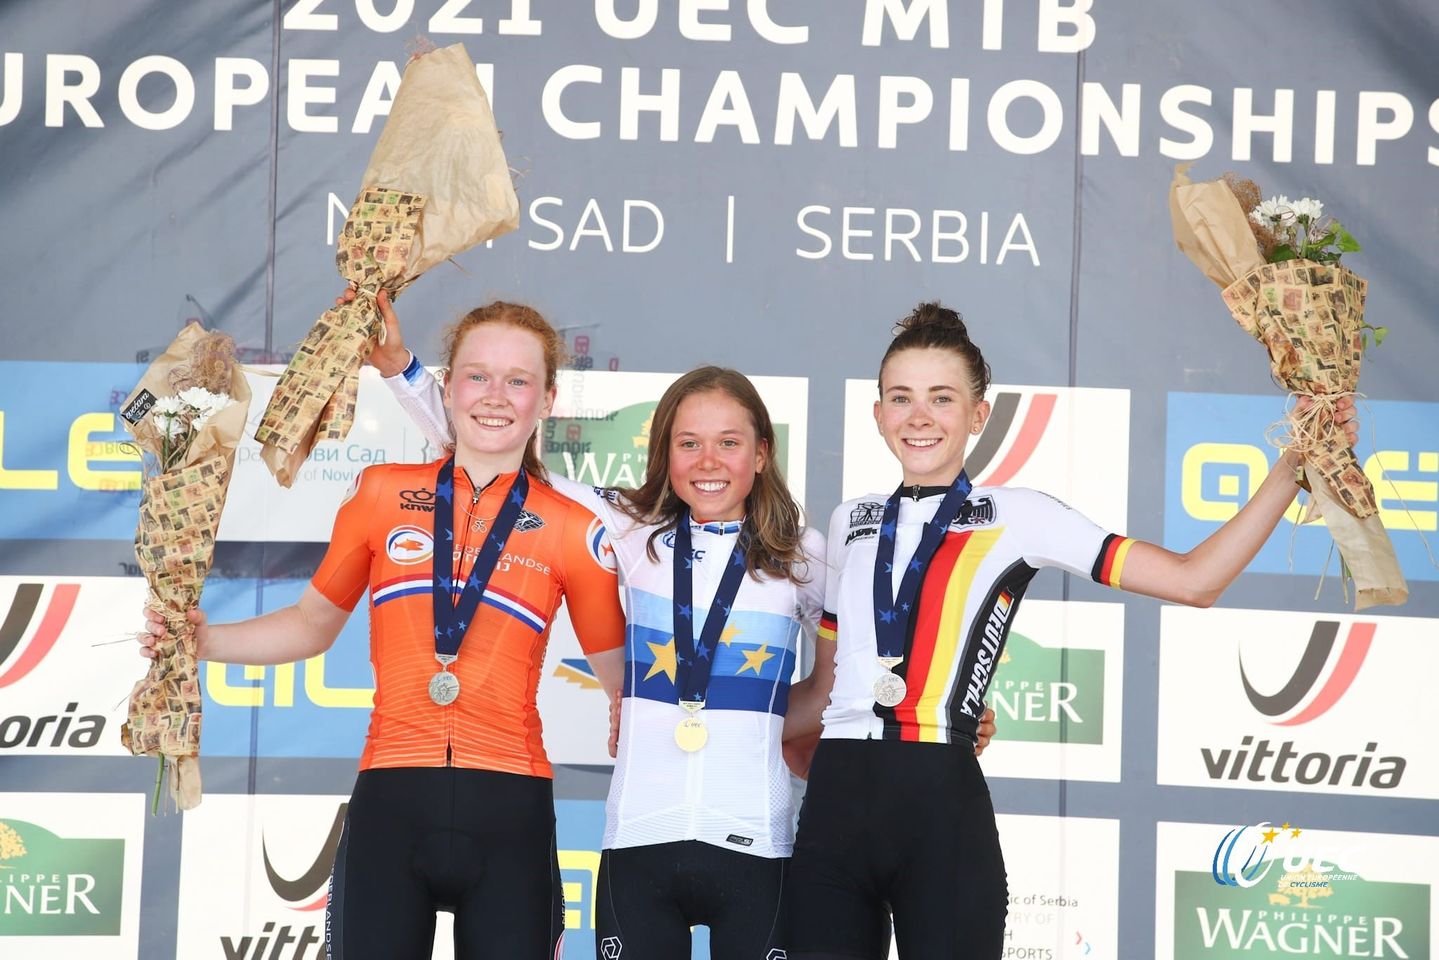 Il podio Donne U23 dei Campionati Europei XCO 2021